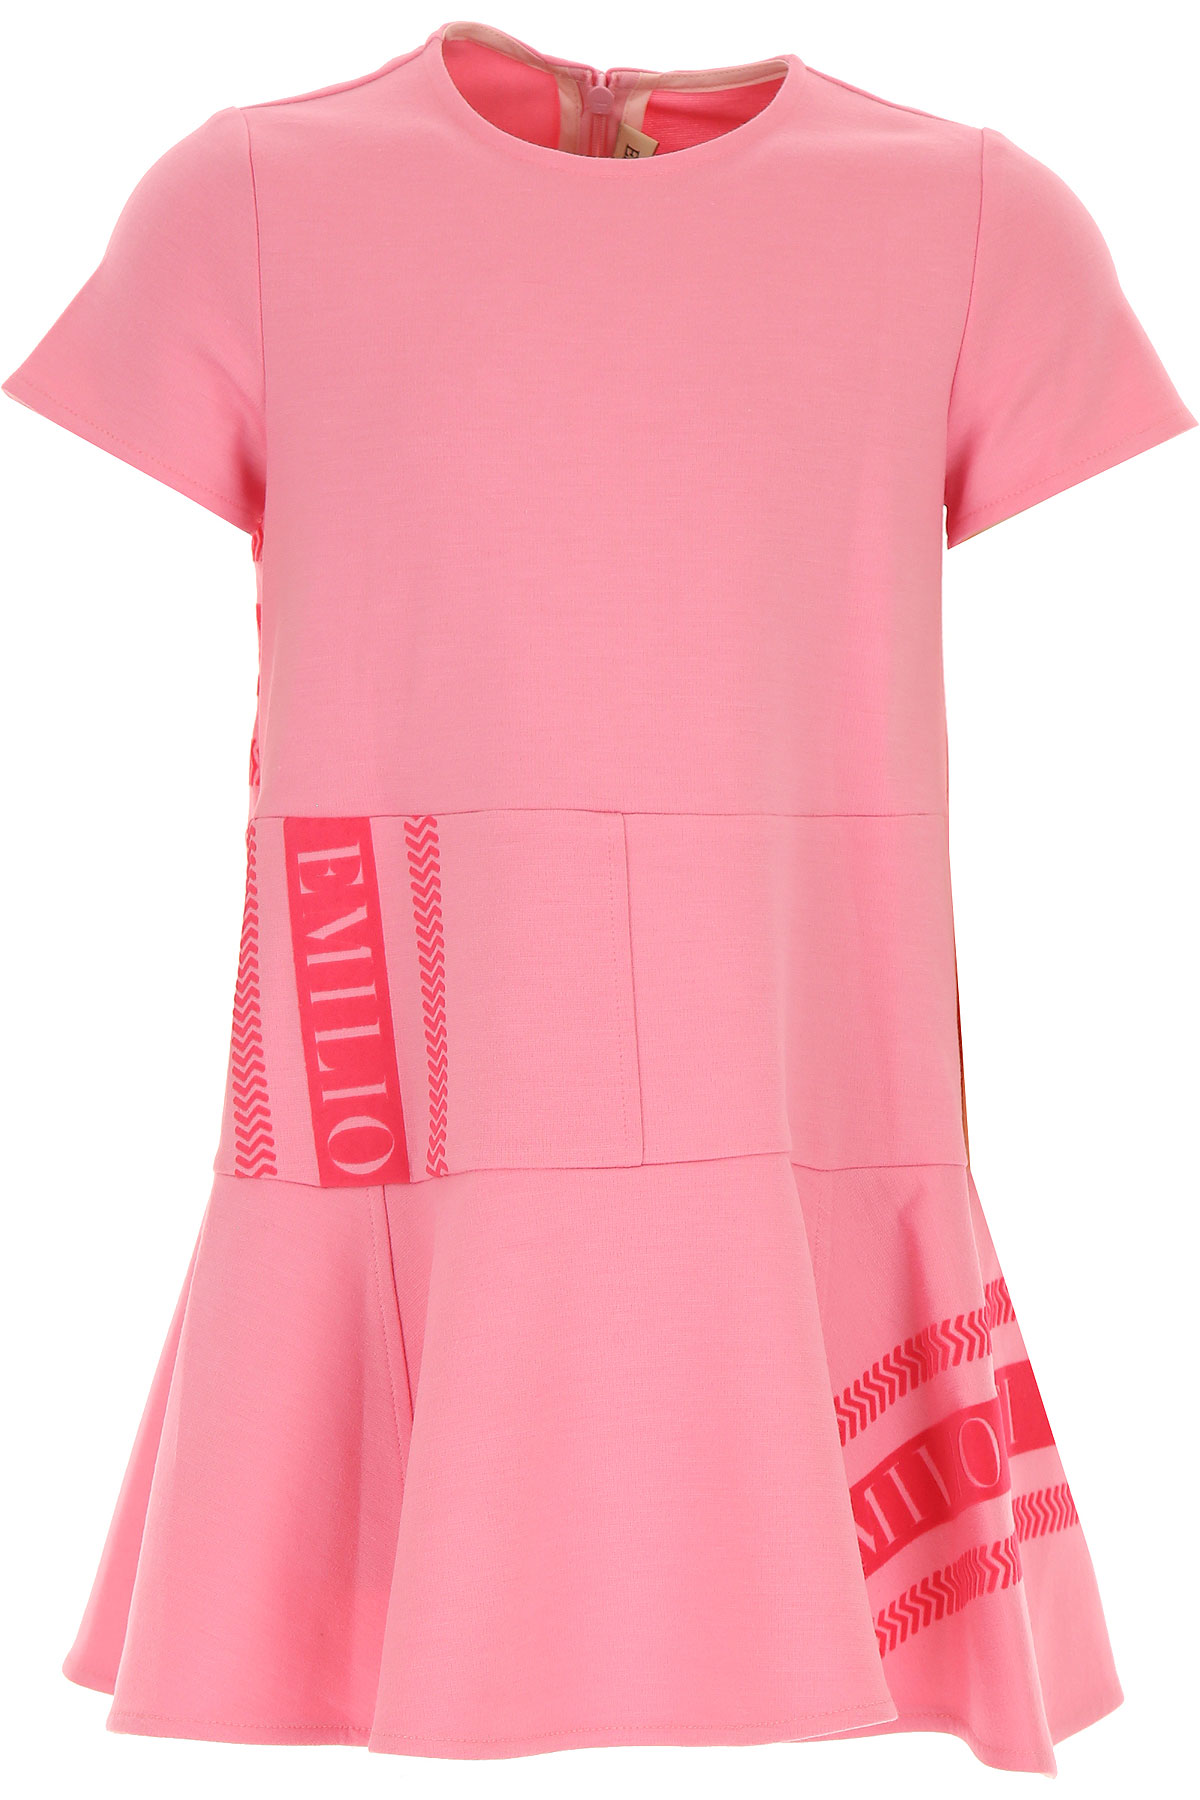 Emilio Pucci Kleid für Mädchen Günstig im Sale, Pink, Viskose, 2017, 3Y 4Y 6Y